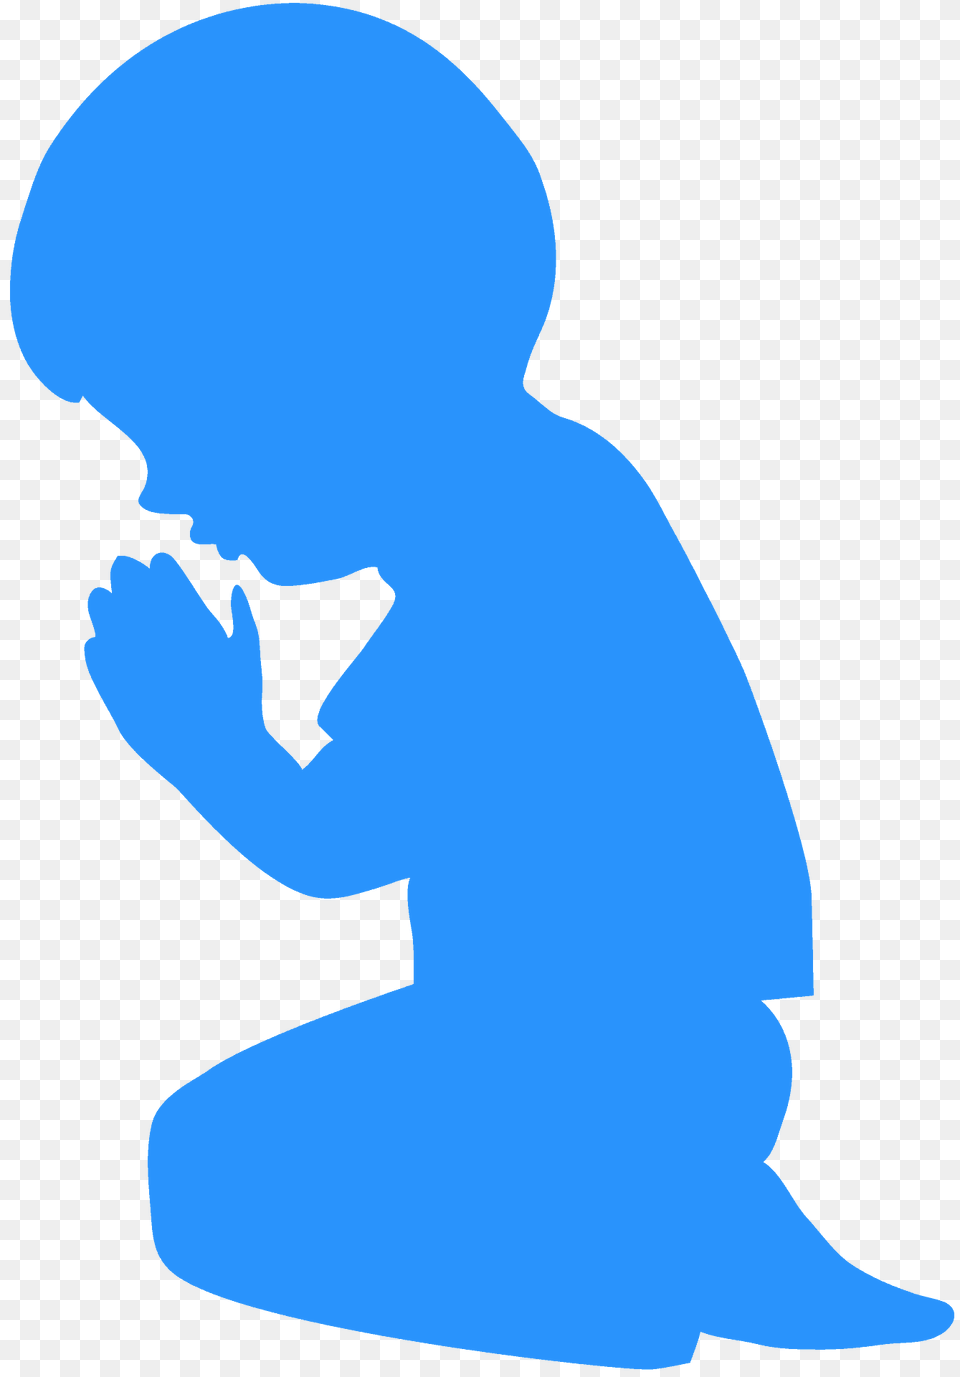 Child Praying Silhouette, Kneeling, Person, Animal, Fish Free Transparent Png